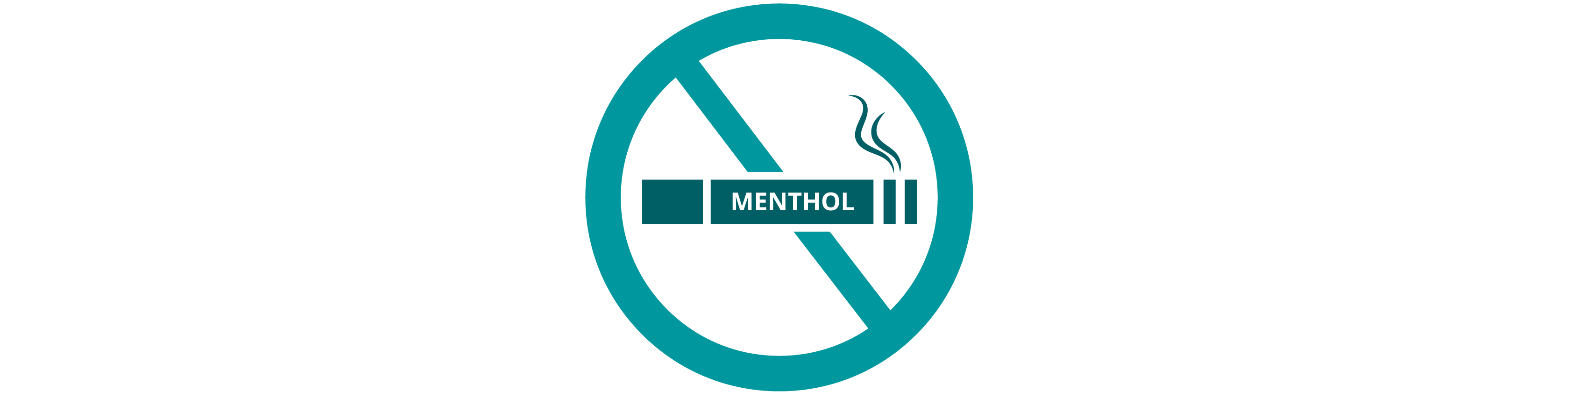 Philip Morris er ikke imod mentolcigaret forbuddet